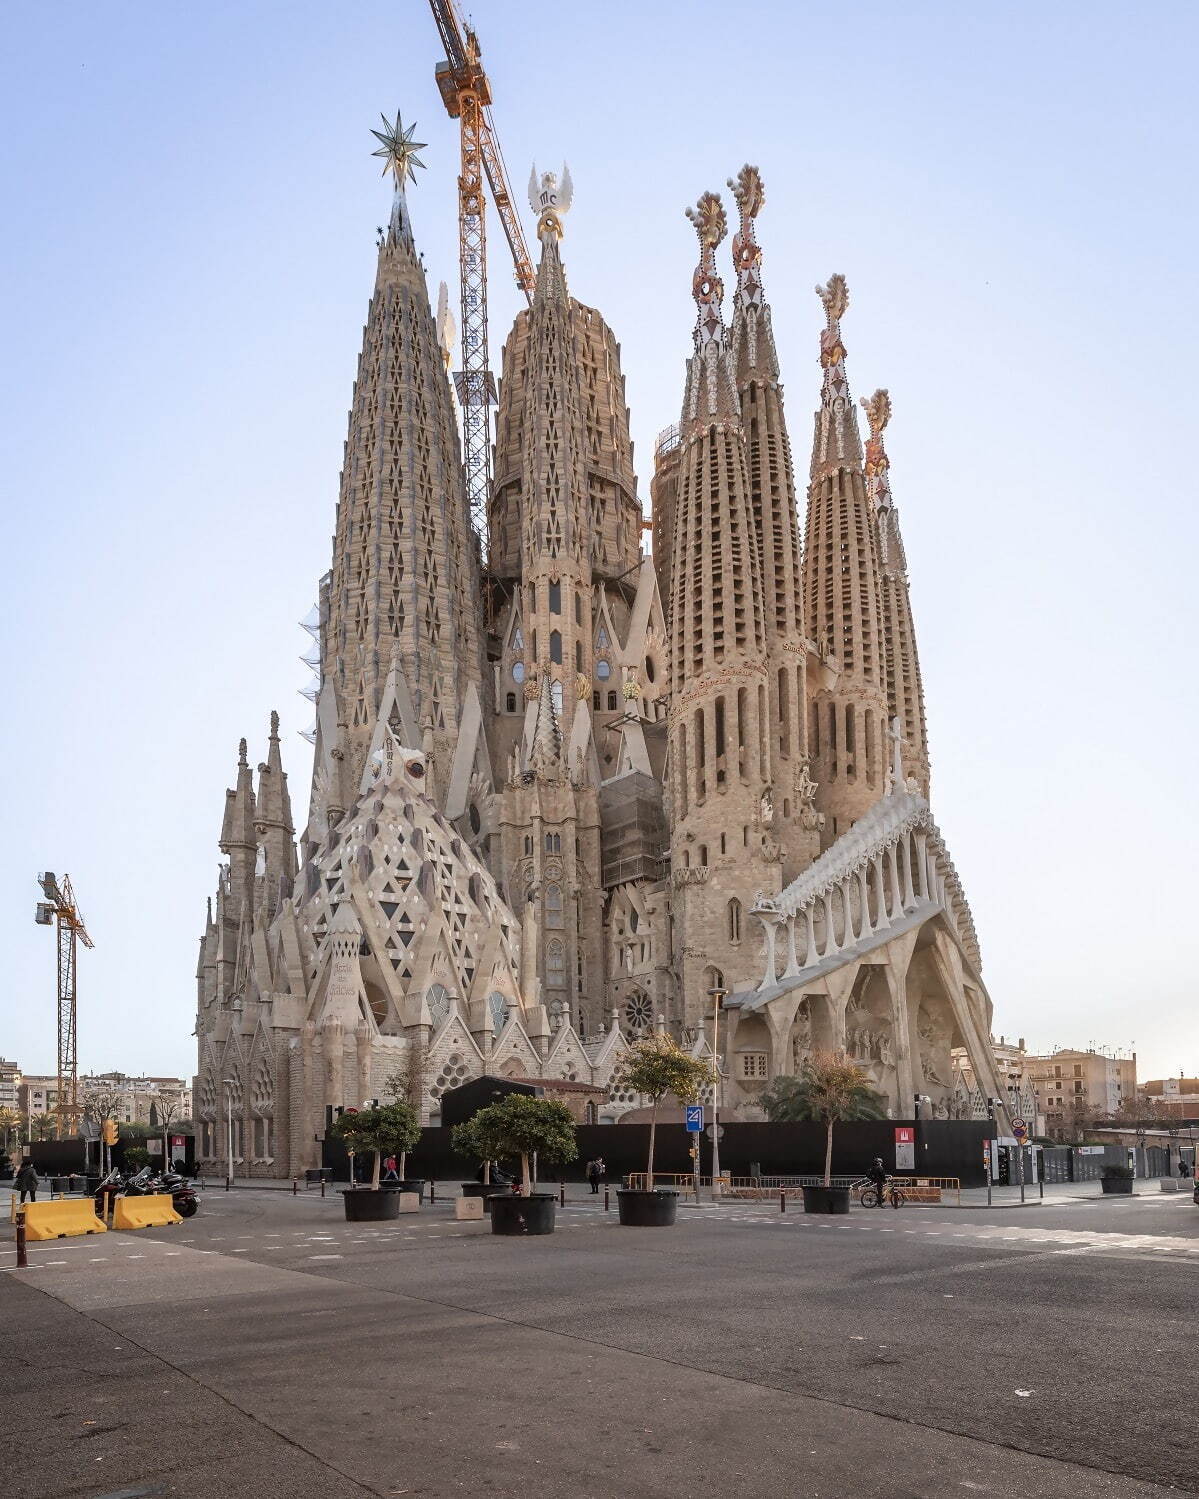 サグラダ・ファミリア聖堂、 2023年1月撮影
© Fundació Junta Constructora del Temple Expiatori de la Sagrada Família